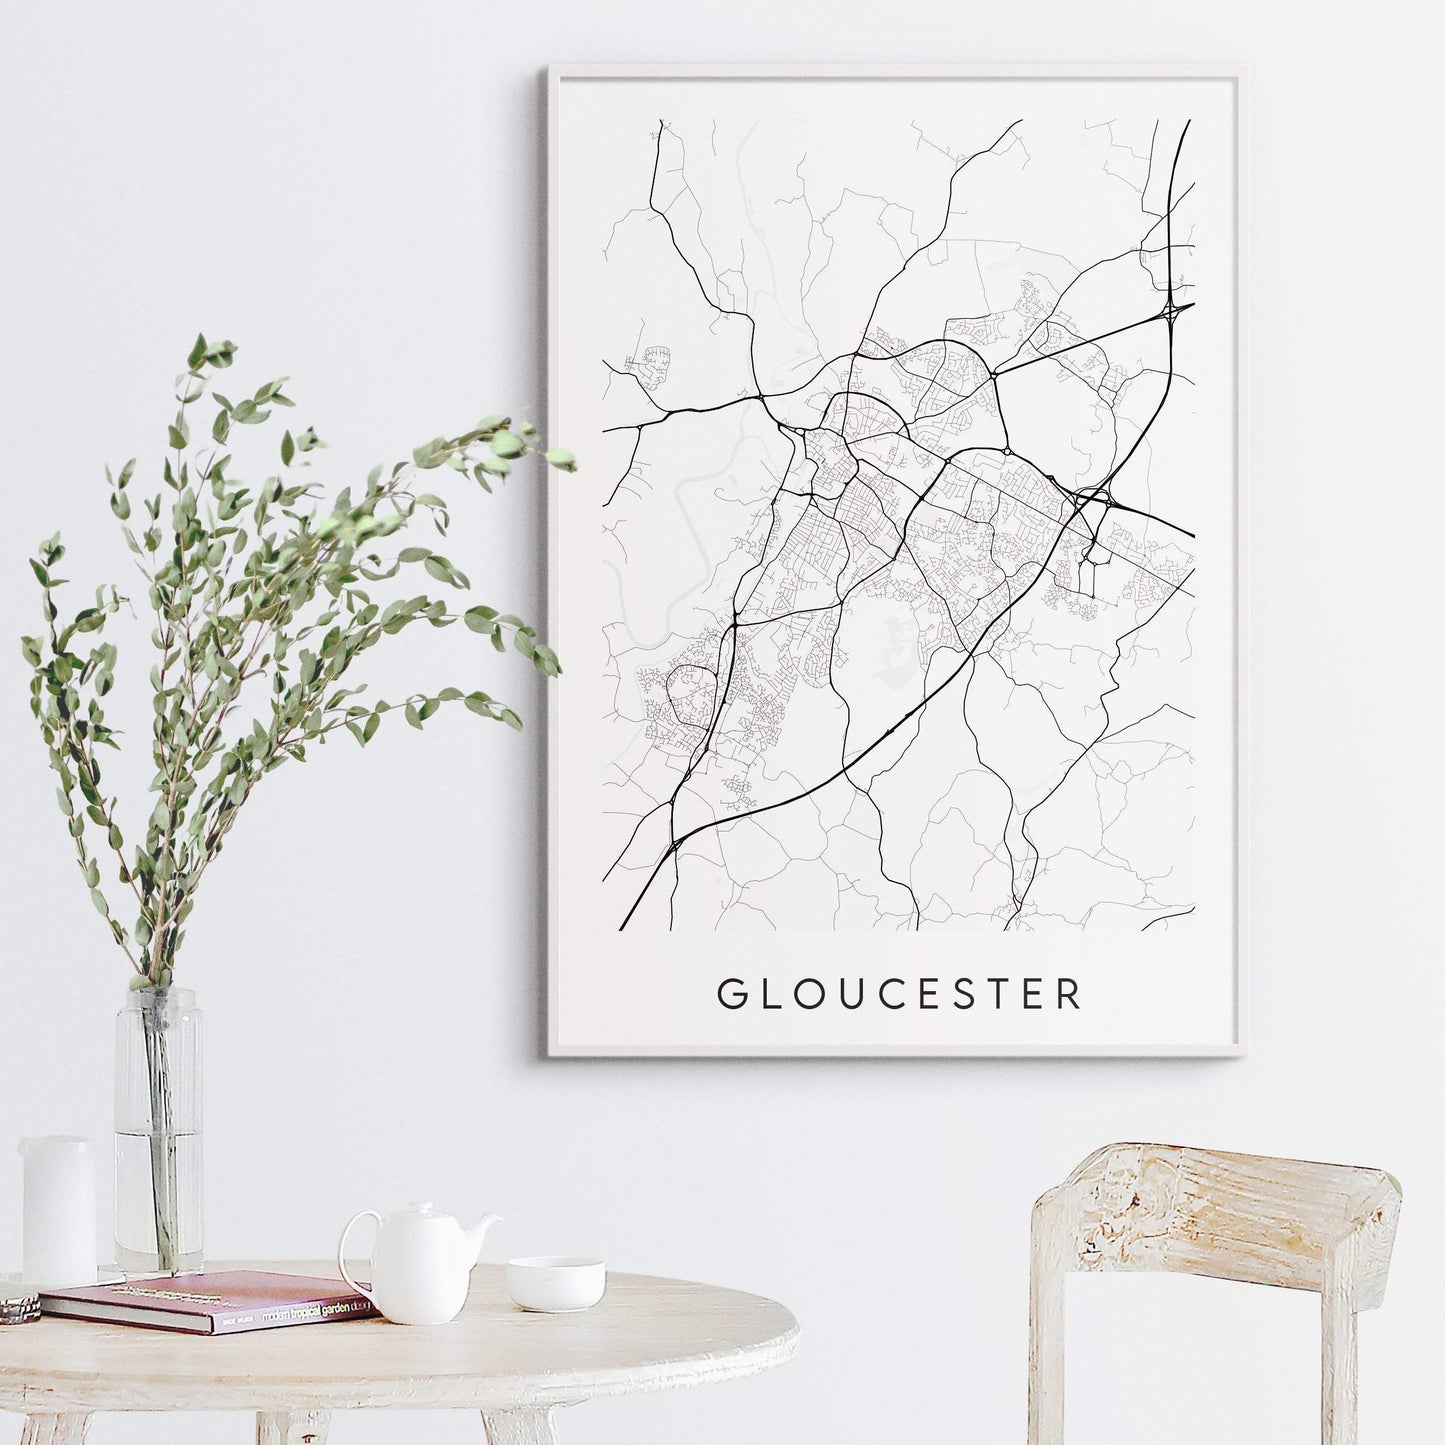 Gloucester Map Print